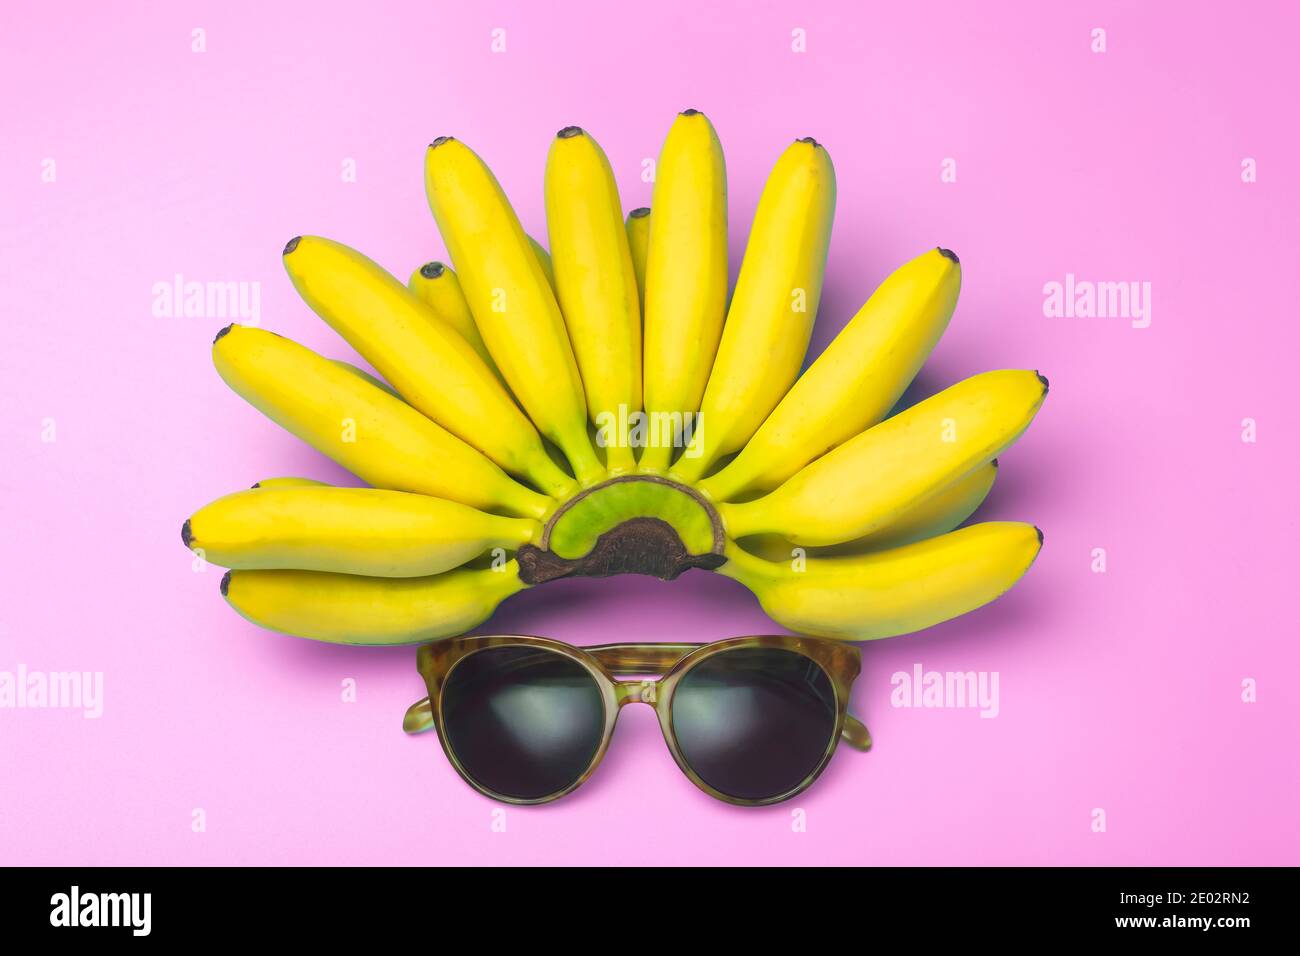 Bananes et lunettes de soleil sur fond rose. Concept été, vacances, voyage  et soleil. Composition artistique minimale Photo Stock - Alamy